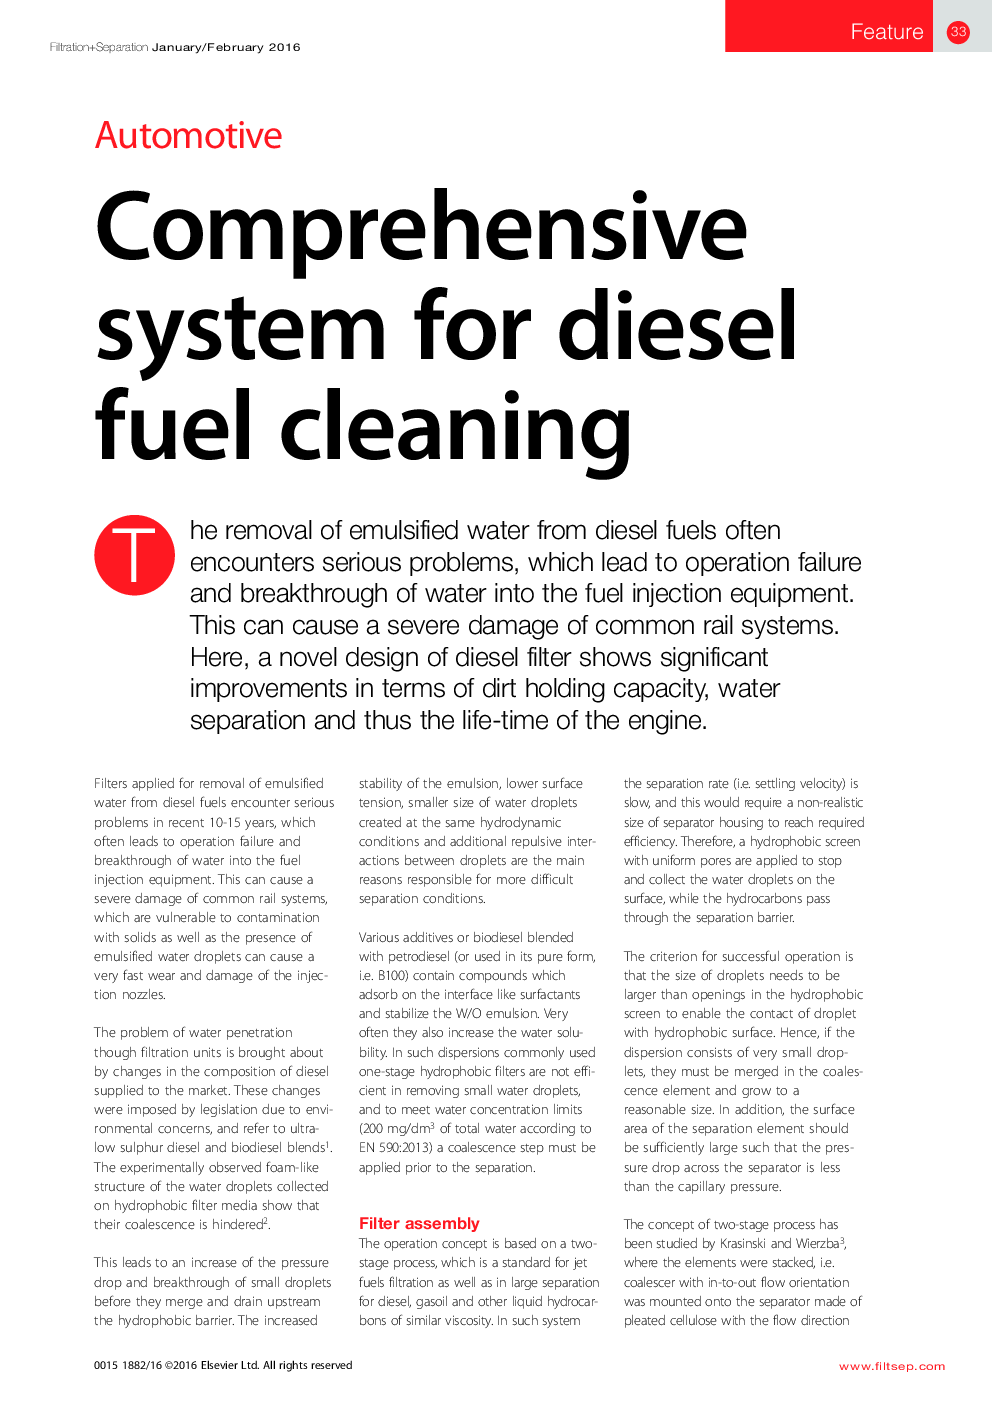 سیستم جامع برای تمیز کردن سوخت دیزل